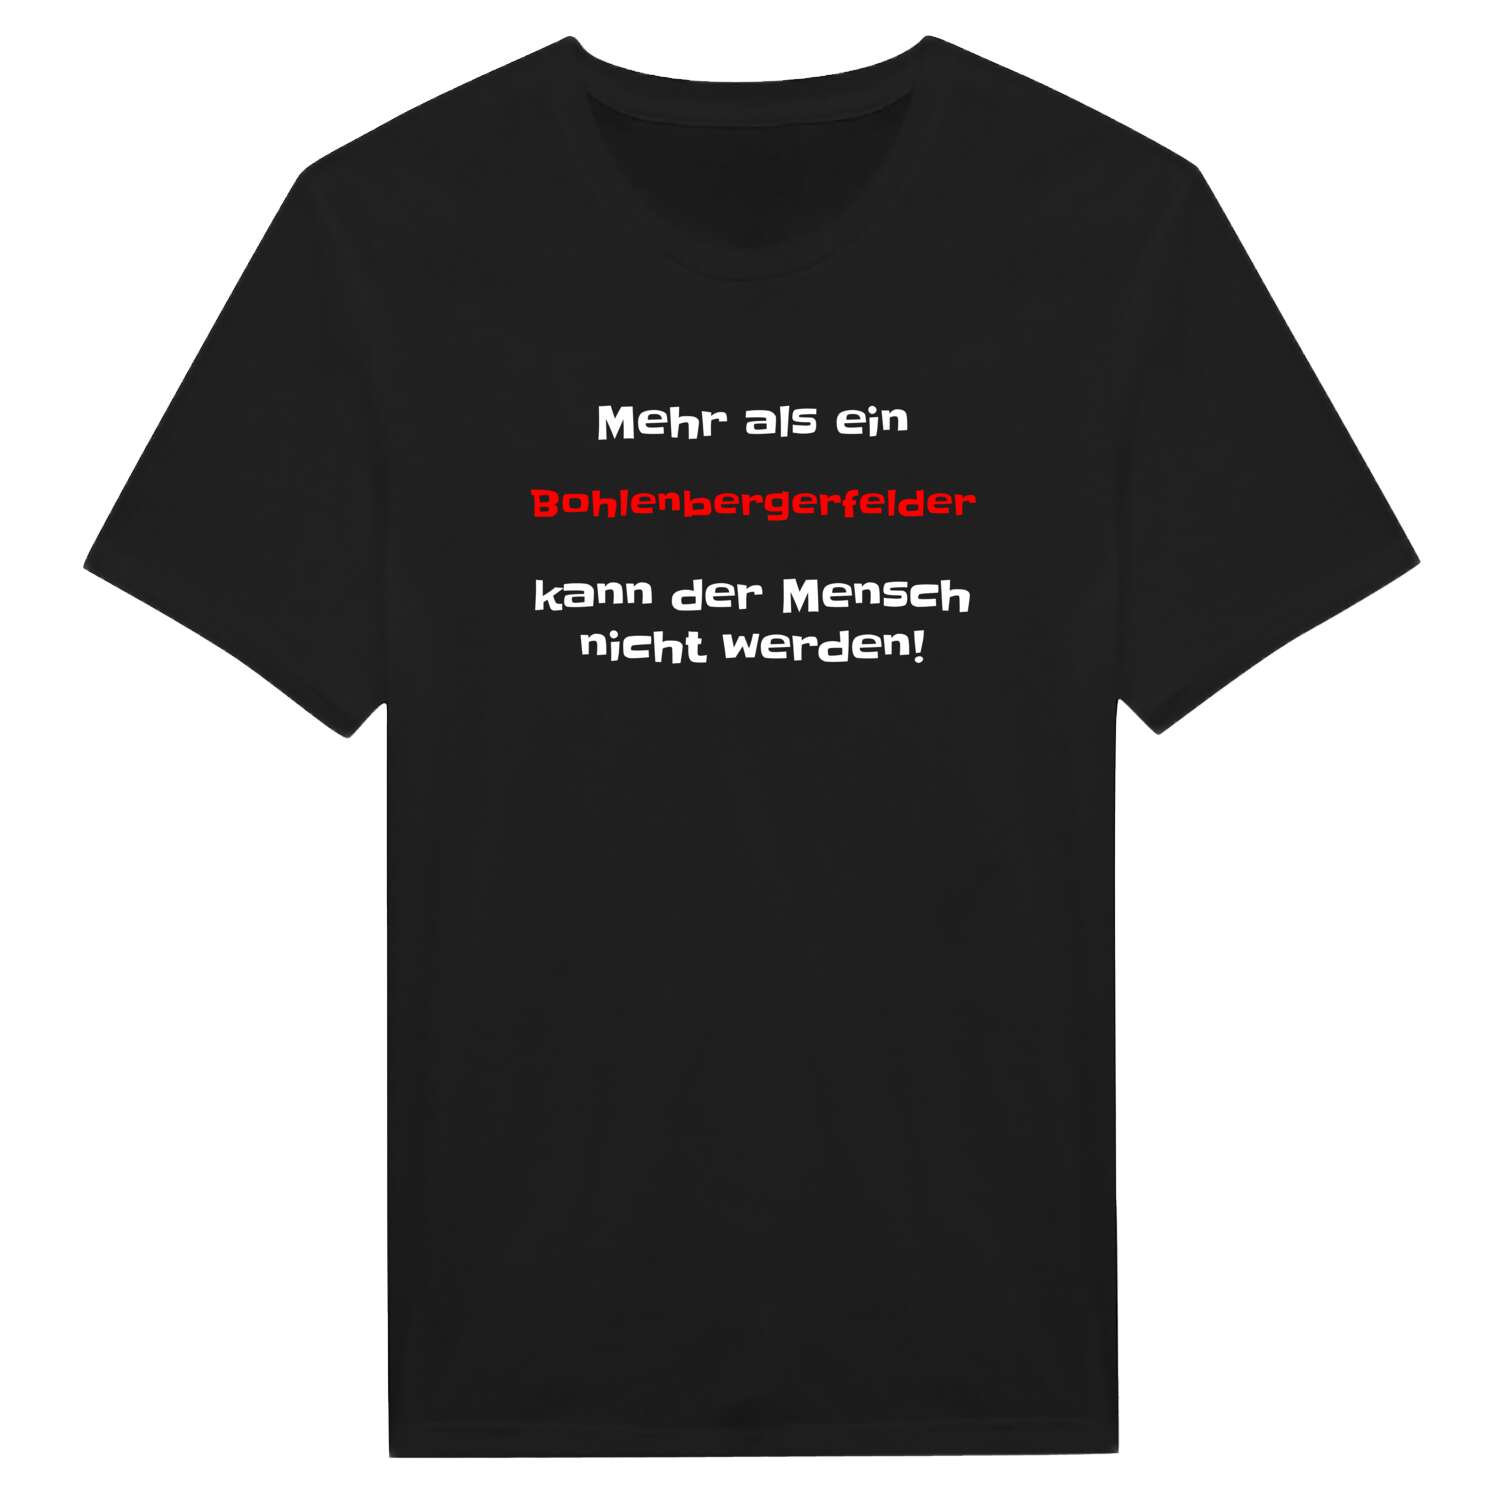 Bohlenbergerfeld T-Shirt »Mehr als ein«